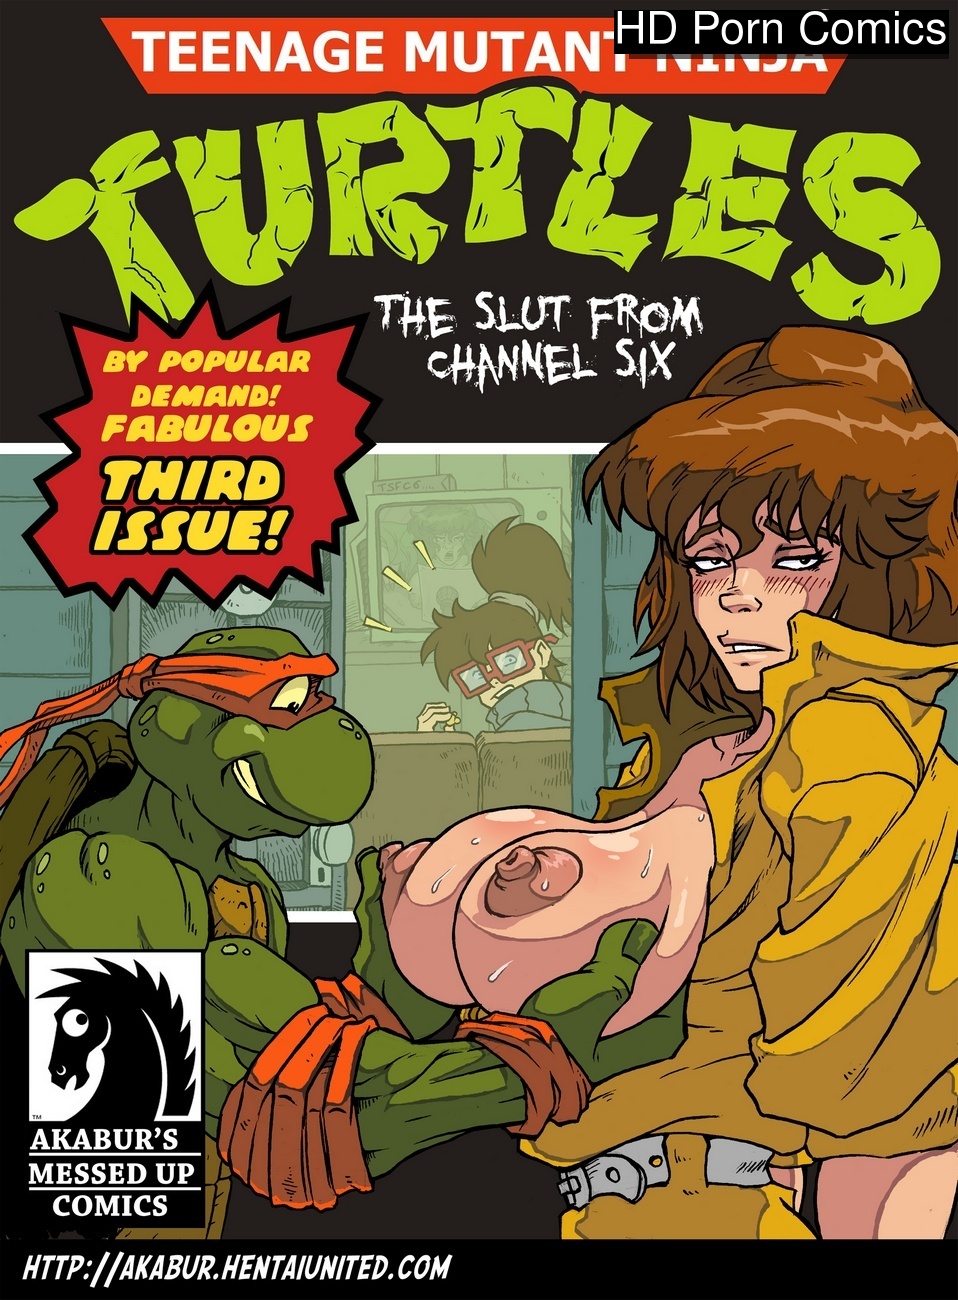 Ninja Catun Xxx Sixe Bp - The Slut From Channel Six 3 - Teenage Mutant Ninja Turtles Sex Comic - HD  Porn Comics